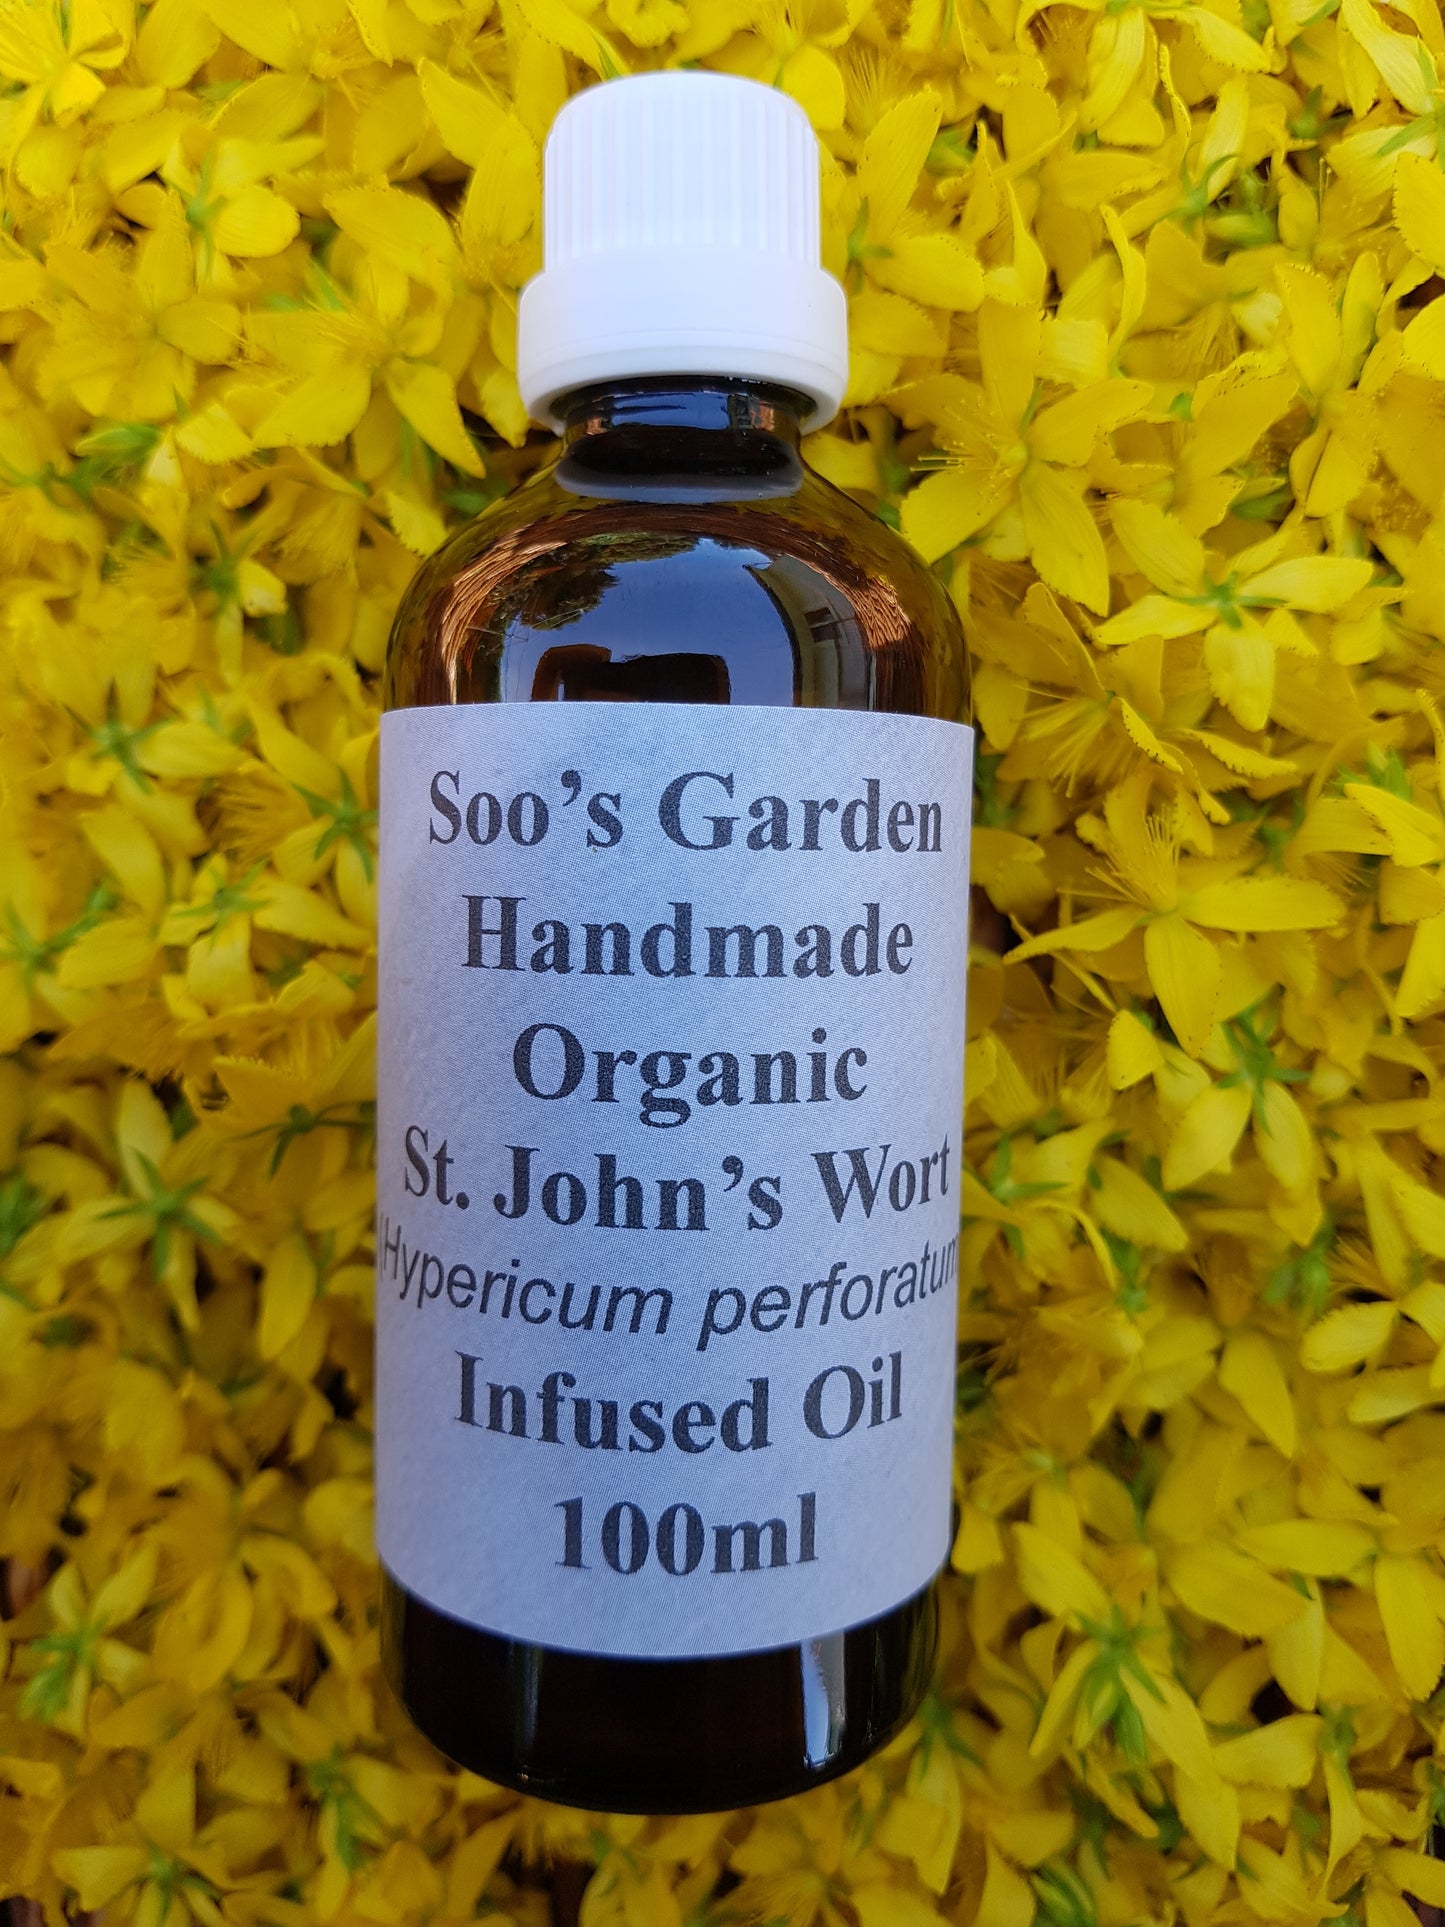 St. John's Wort infused oil 100ml